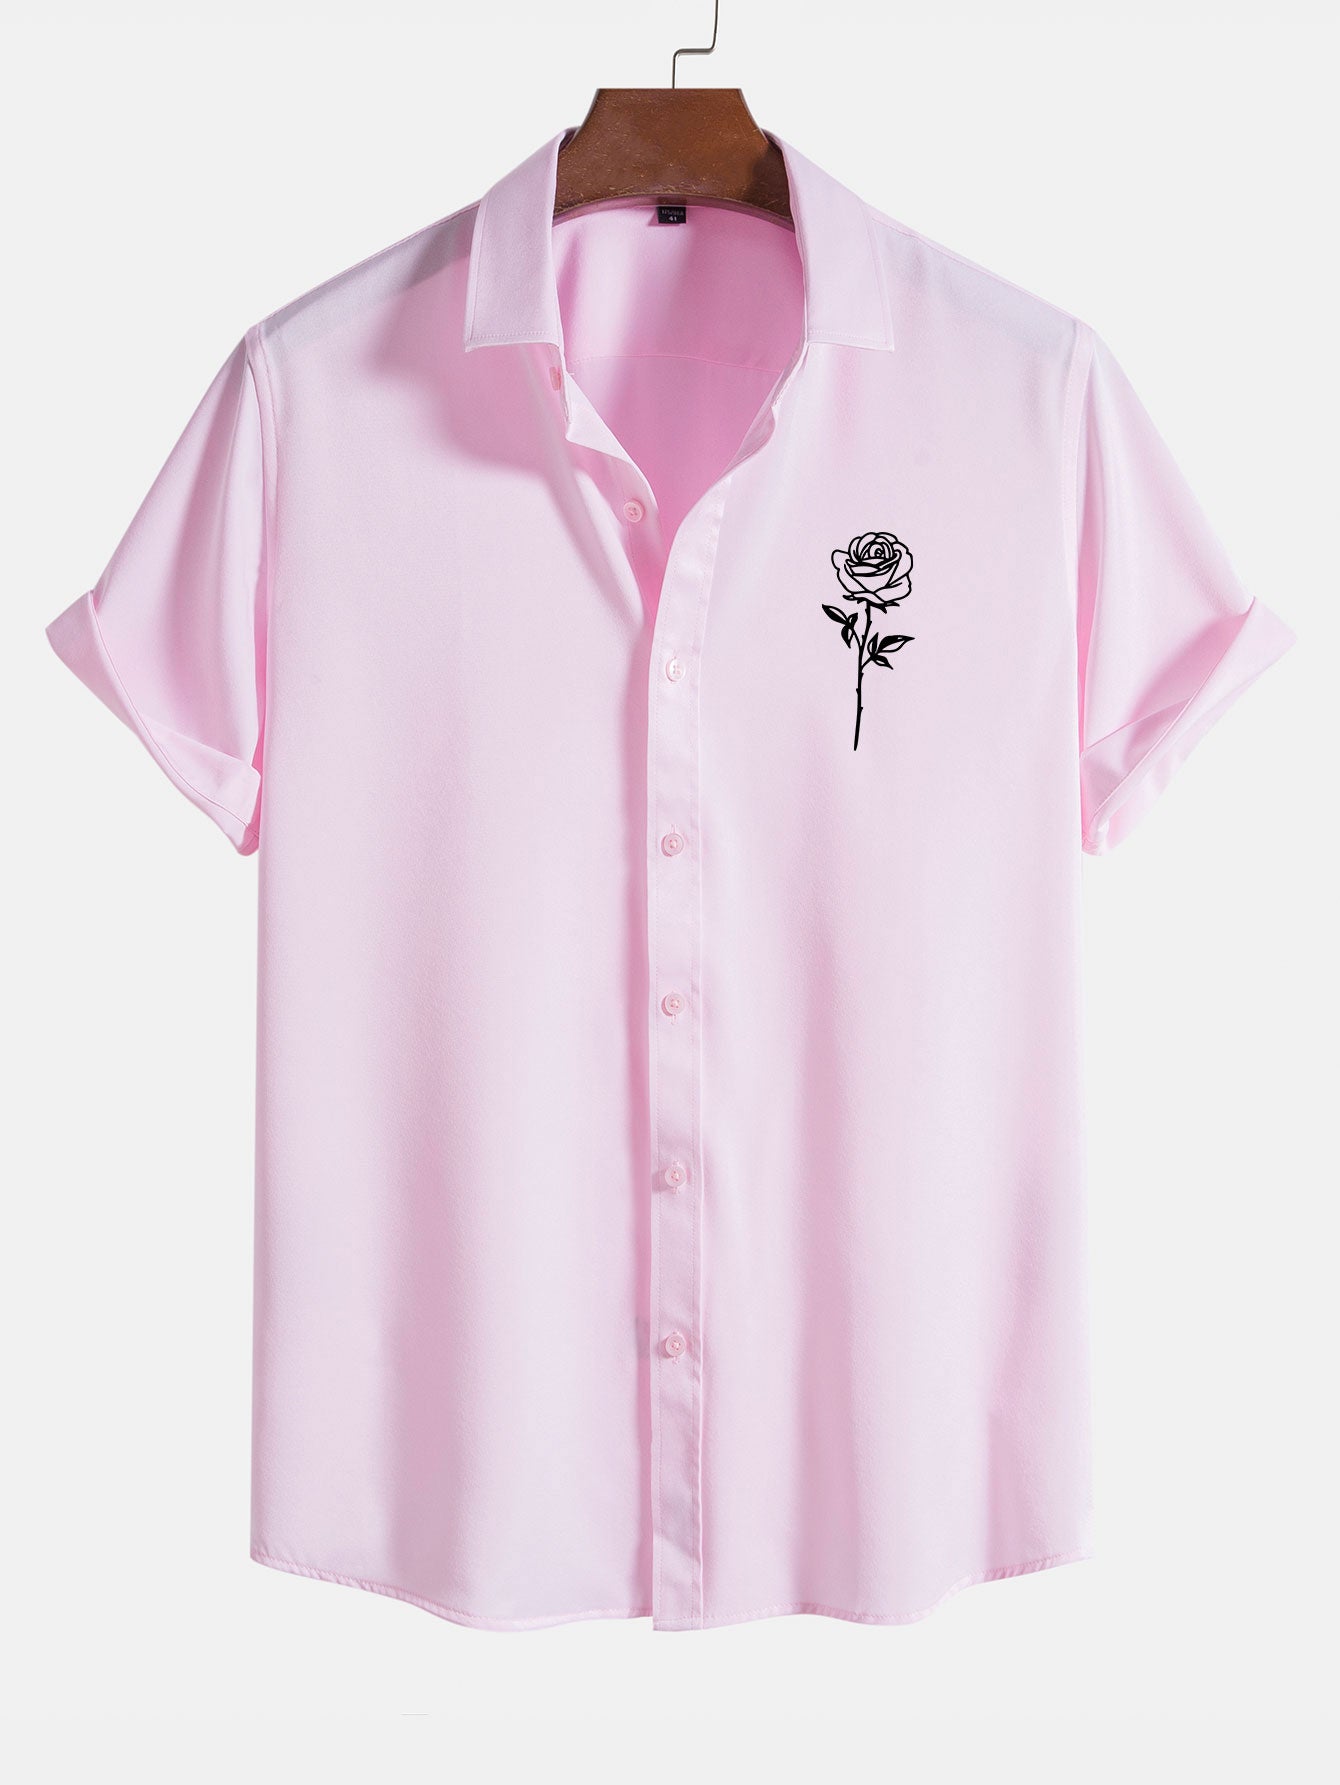 Rose Print Short Sleeve Shirts